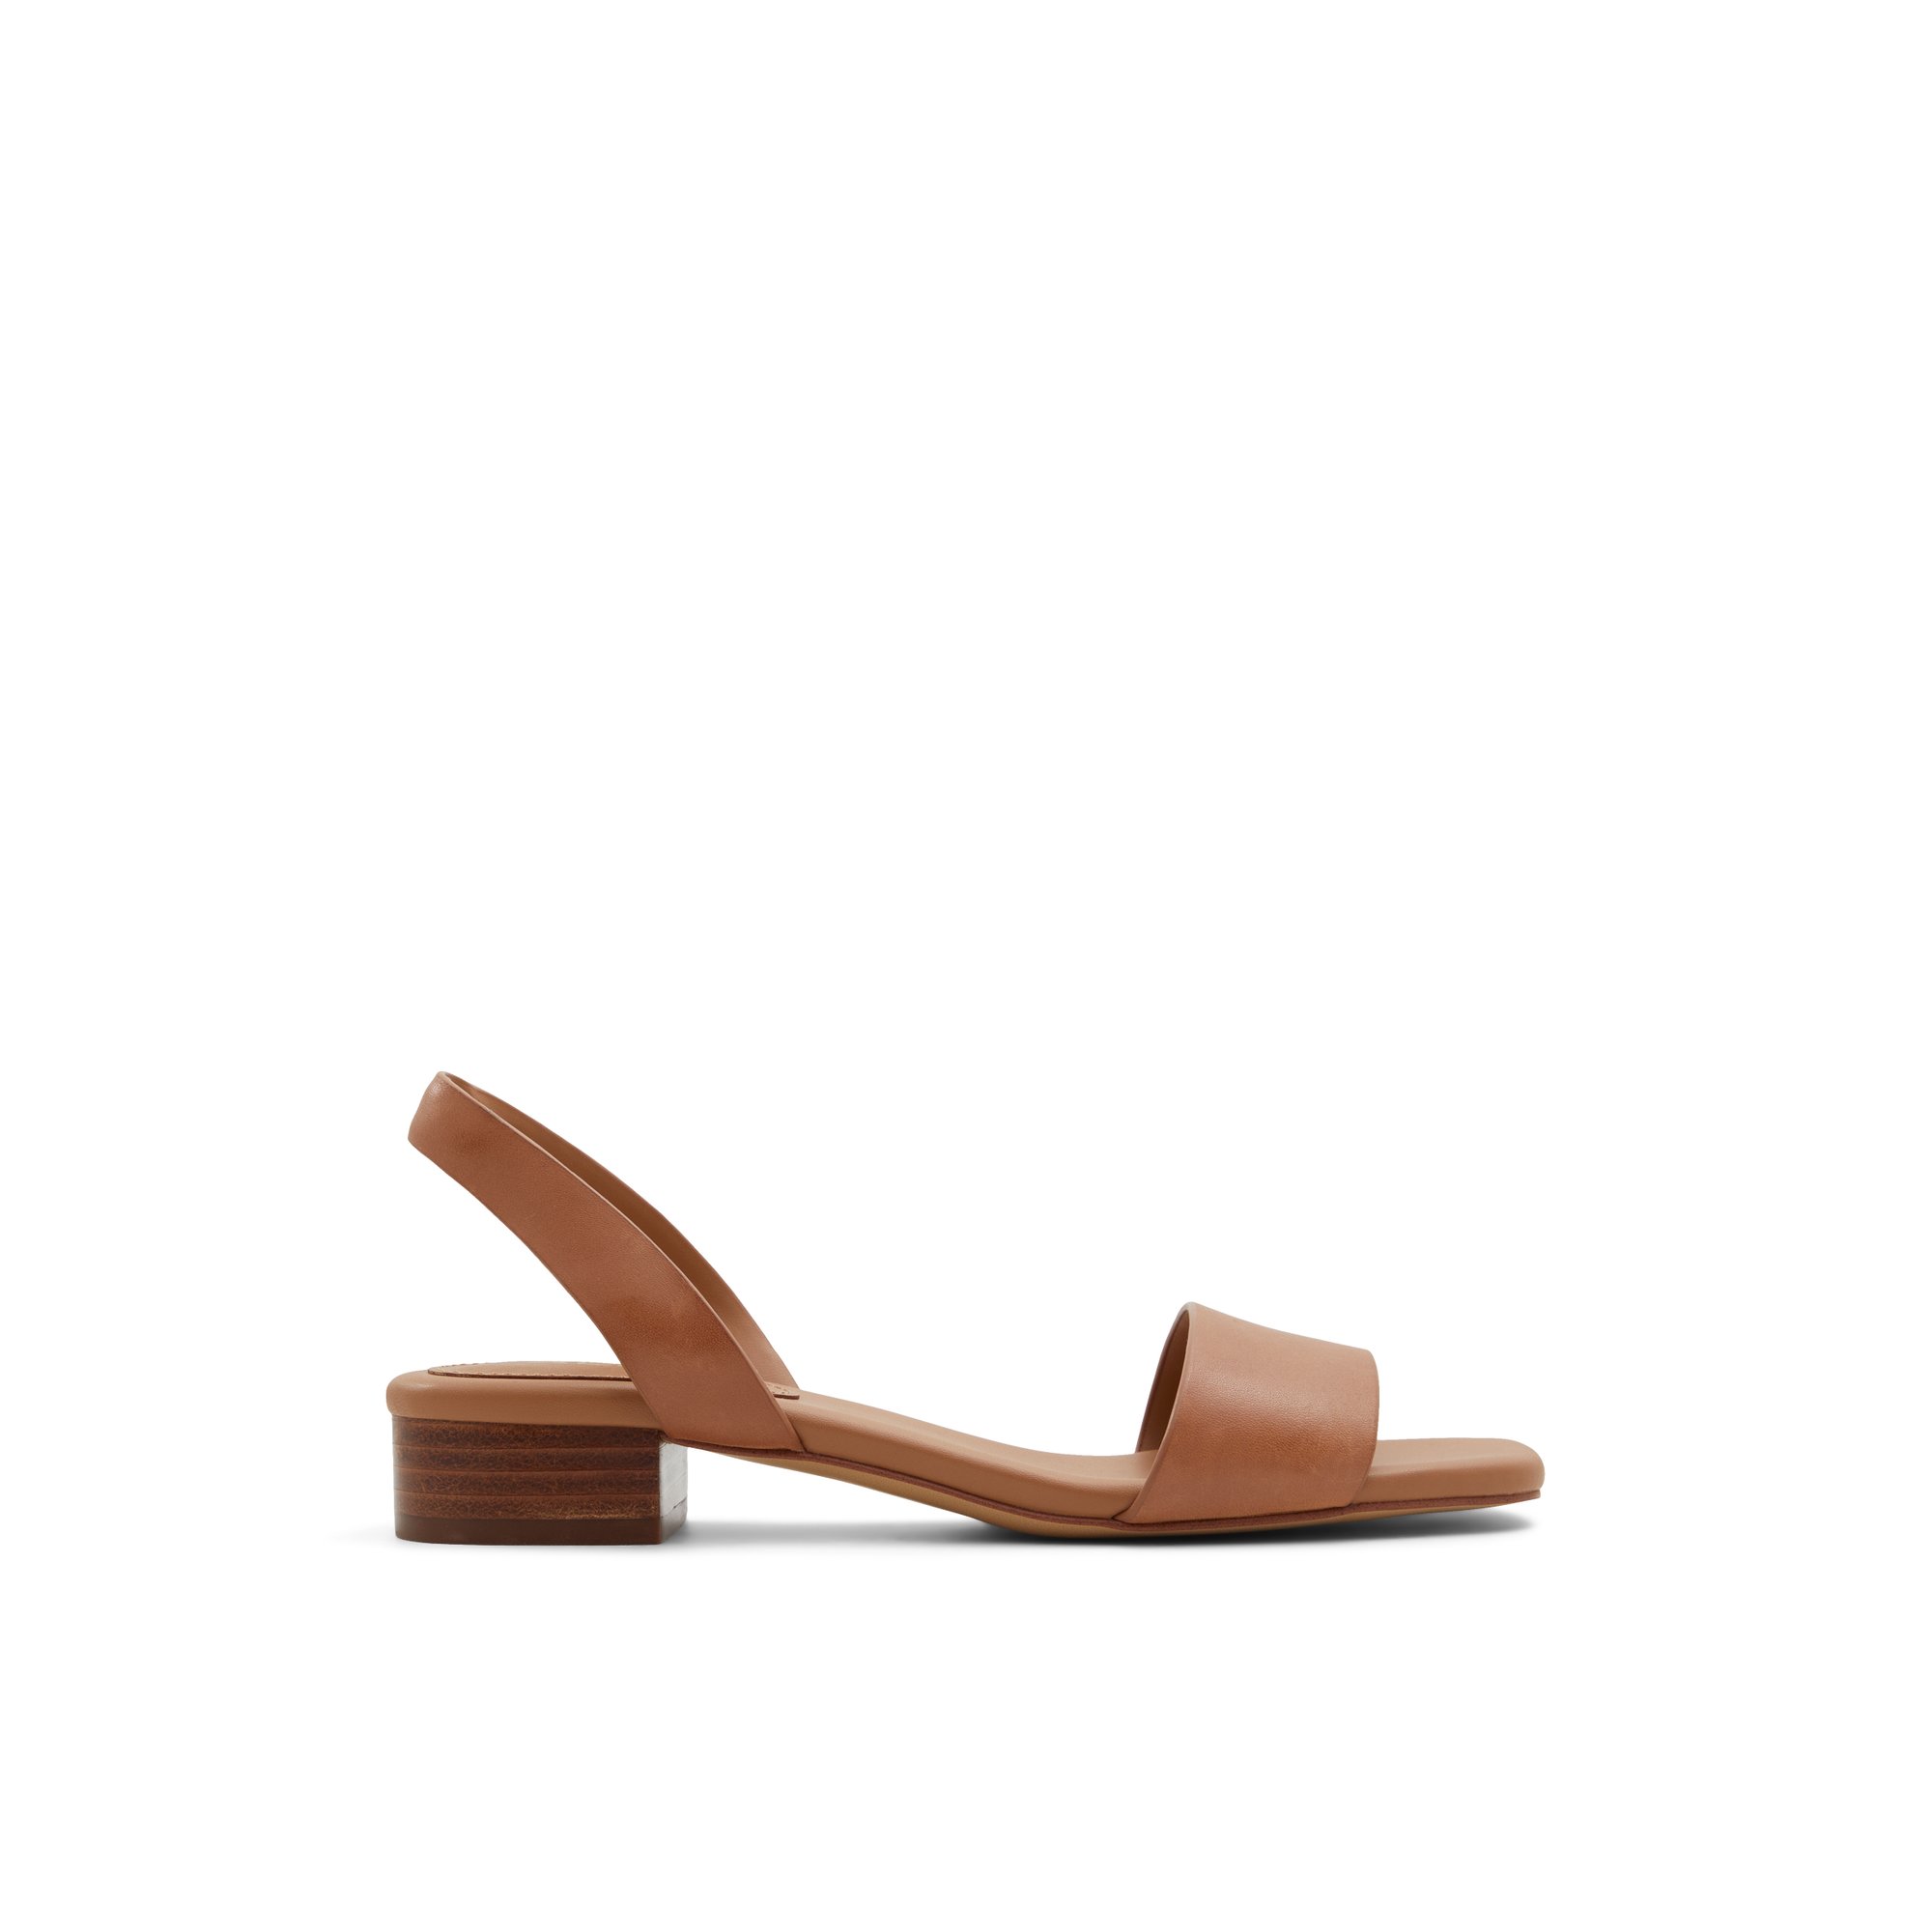 ALDO Dorenna - Women's Sandals Heeled - Beige